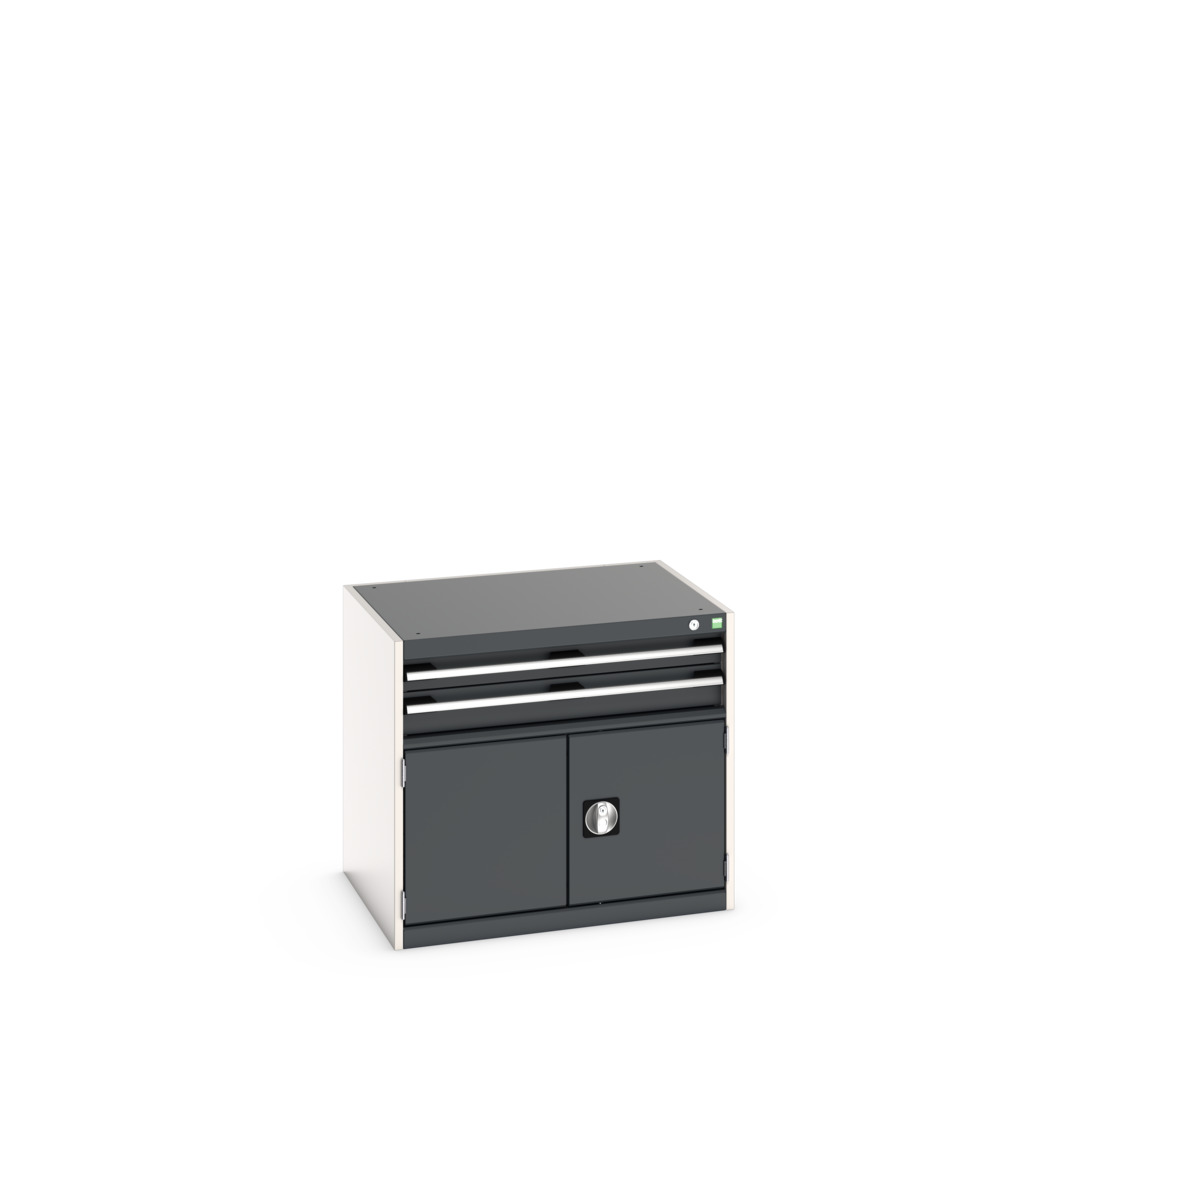 40020011. - cubio drawer-door cabinet